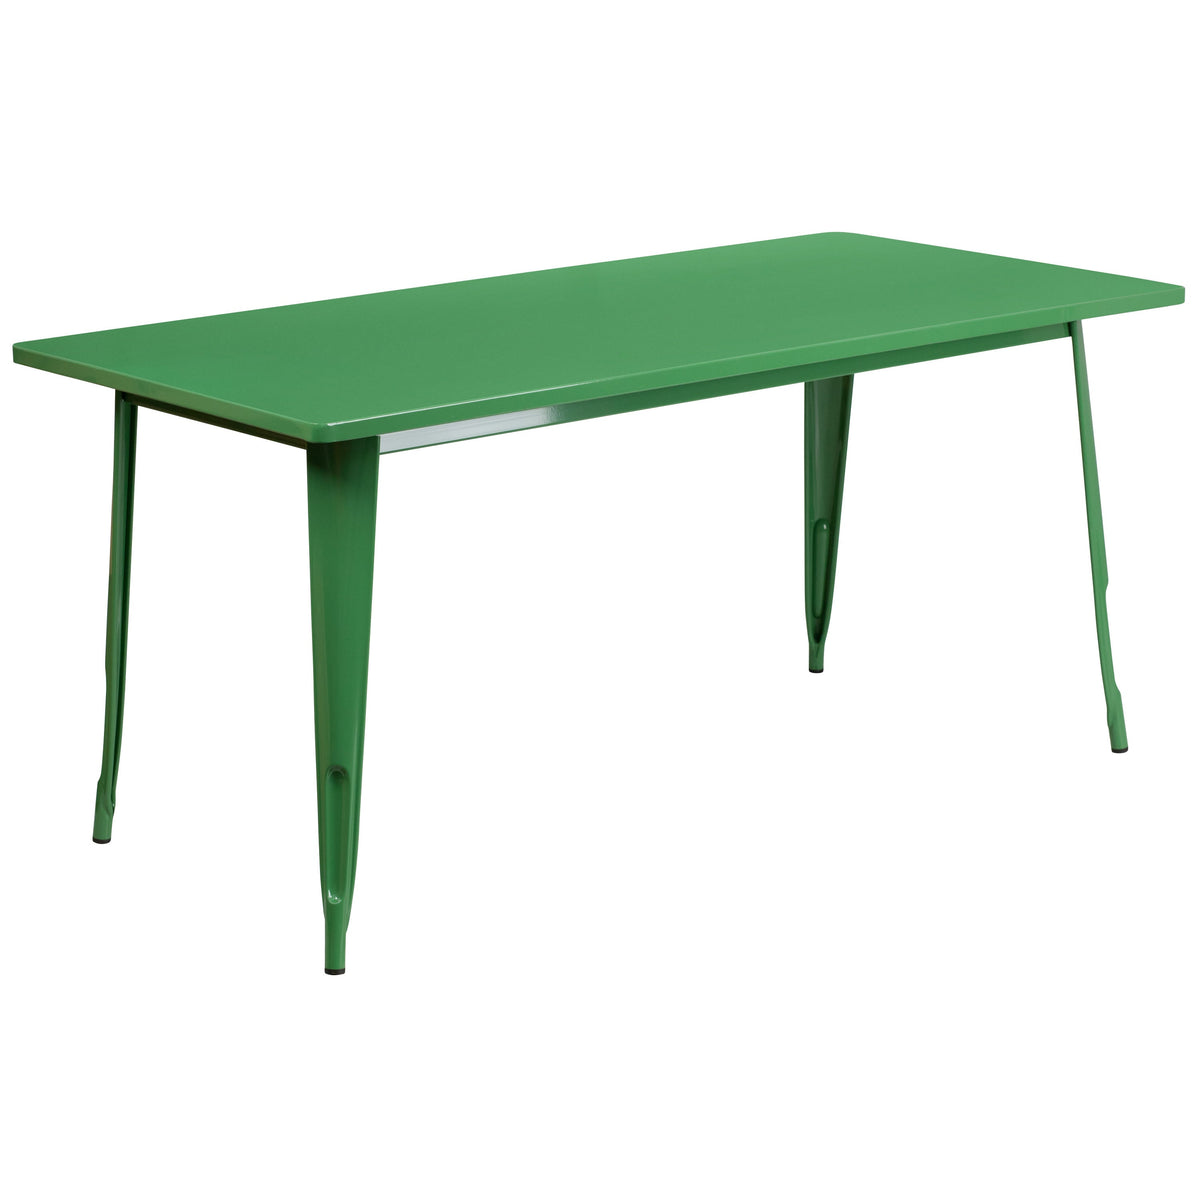 Green |#| 31.5inch x 63inch Rectangular Green Metal Indoor-Outdoor Table - Industrial Table